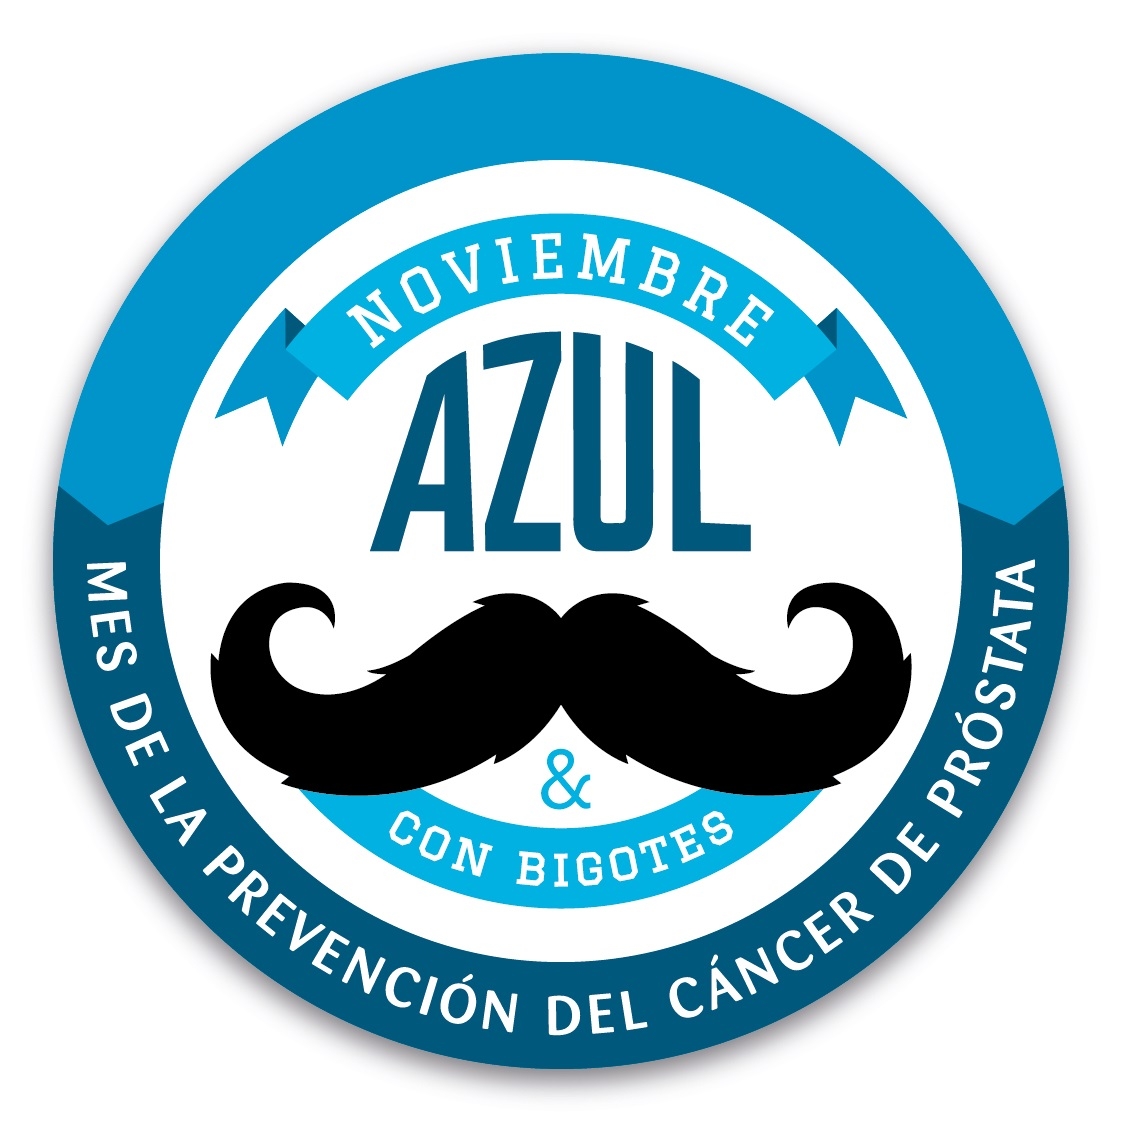 Noviembre azul y con bigotes: concientizar para prevenir